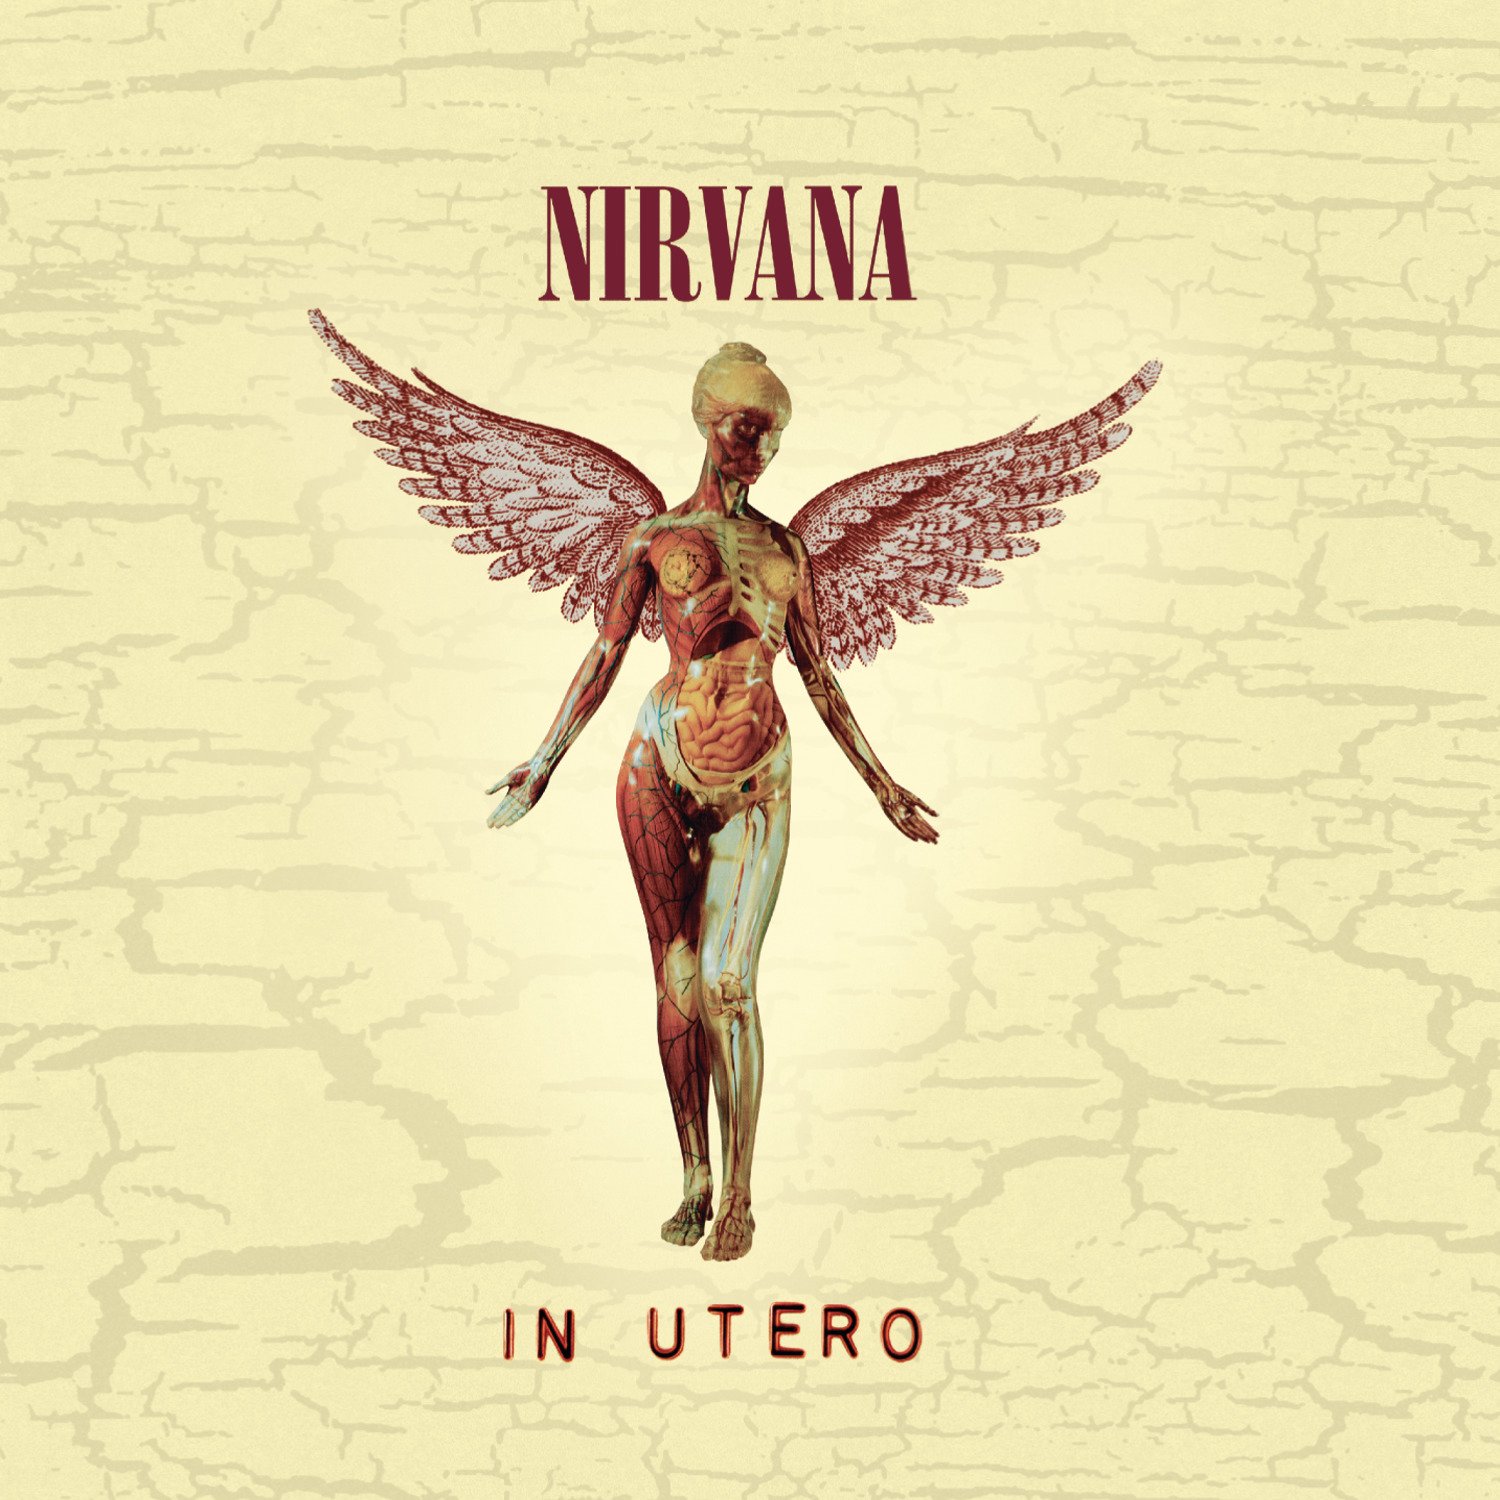 Nirvana-In Utero-Deluxe Edition-Remastered-2CD-FLAC-2013-FORSAKEN Download